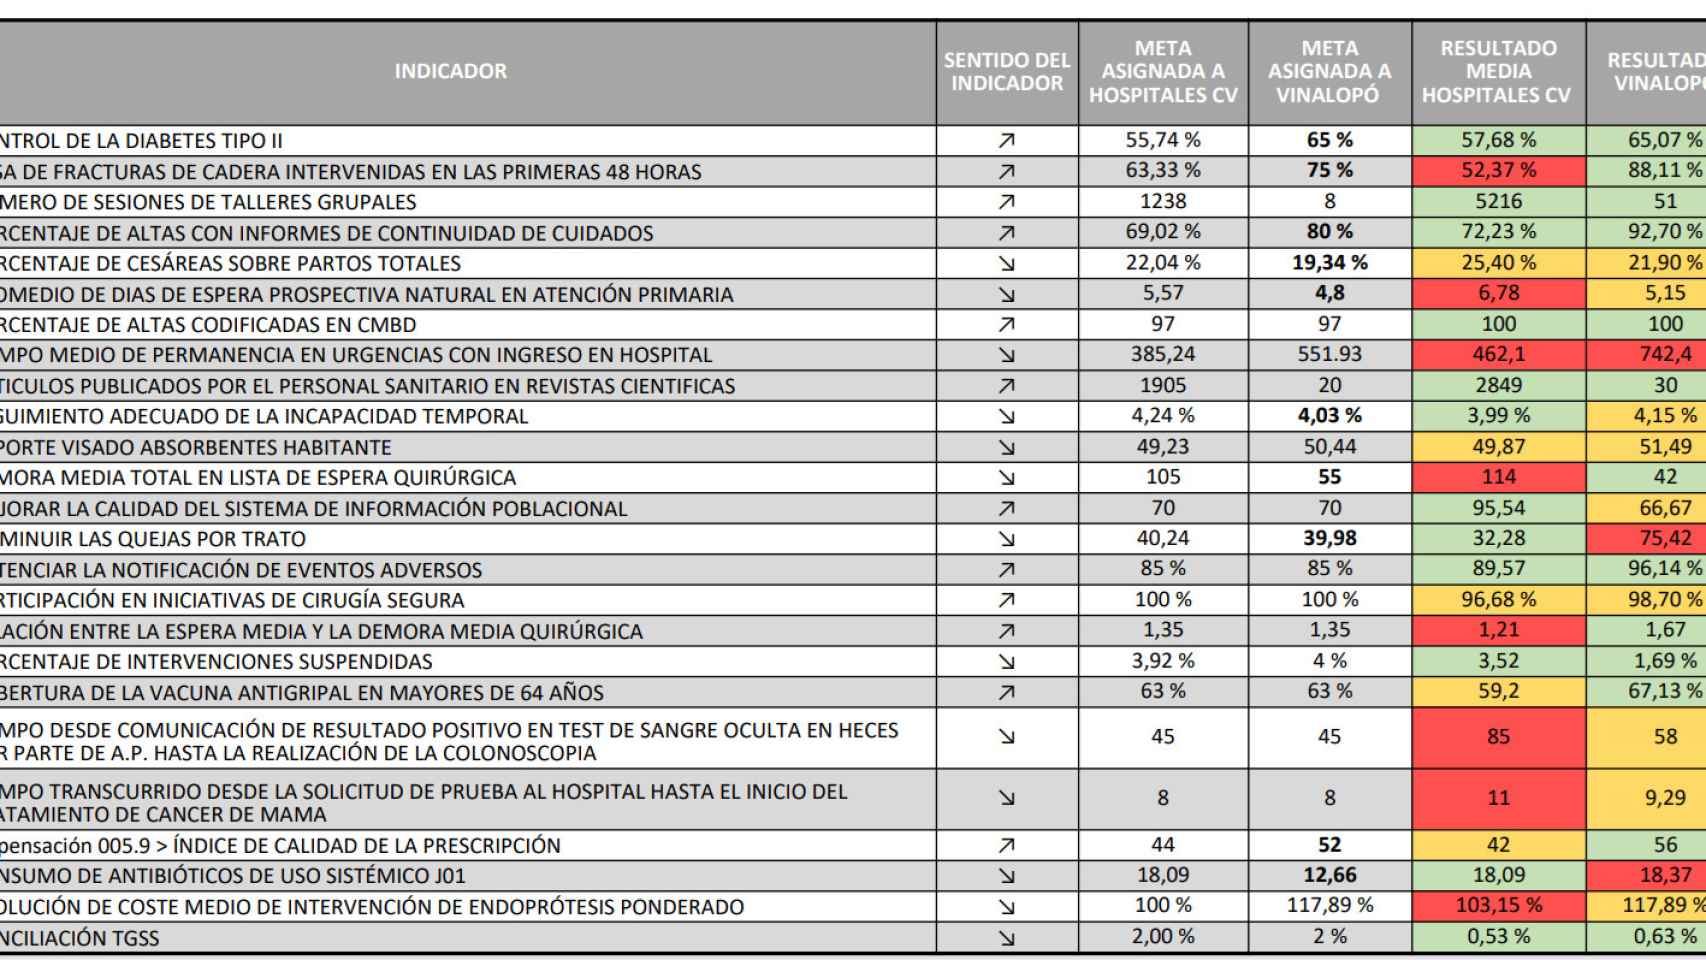 Tabla comparativa de los resultados de los Acuerdos de Gestión entre los hospitales públicos y el Vinalopó.